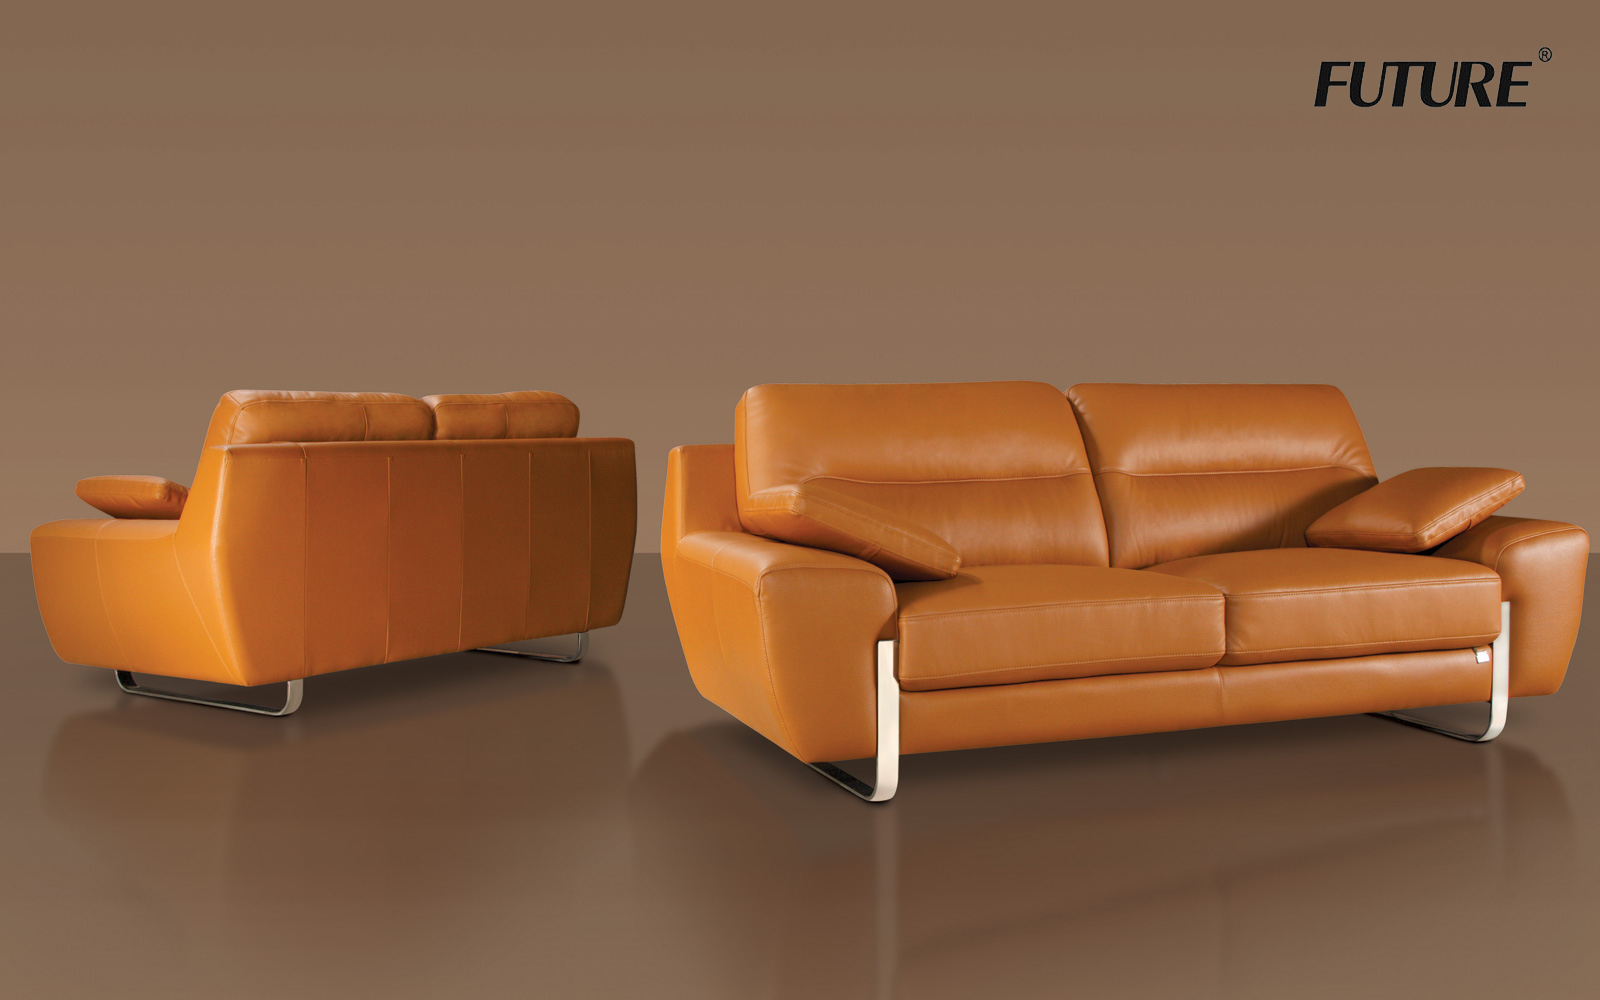 Tổng hợp các mẫu sofa cho căn hộ nhỏ diện tích 25m2 - Ảnh 6